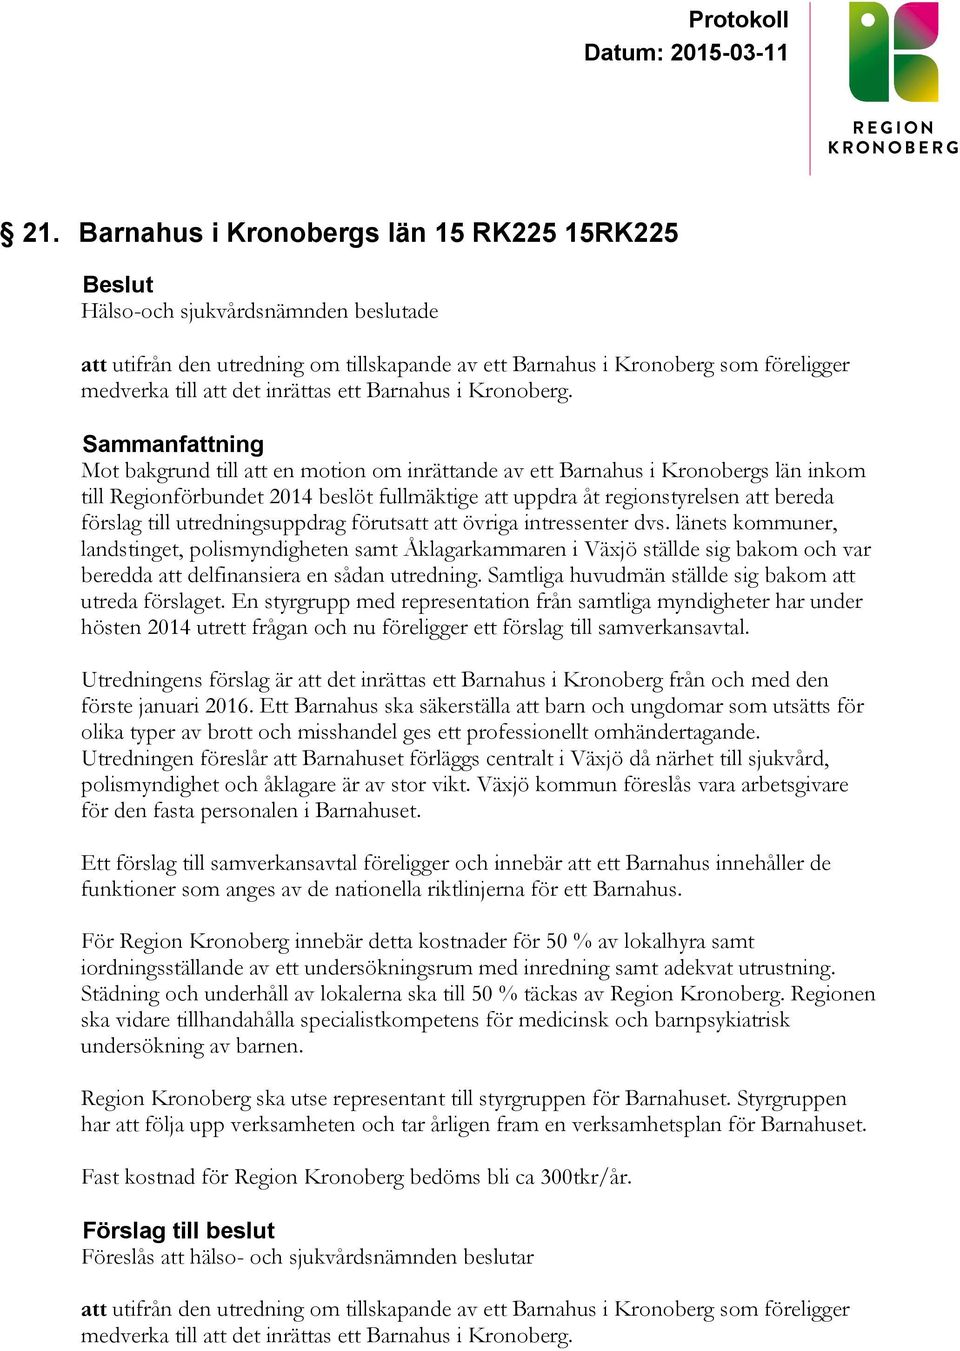 Sammanfattning Mot bakgrund till att en motion om inrättande av ett Barnahus i Kronobergs län inkom till Regionförbundet 2014 beslöt fullmäktige att uppdra åt regionstyrelsen att bereda förslag till